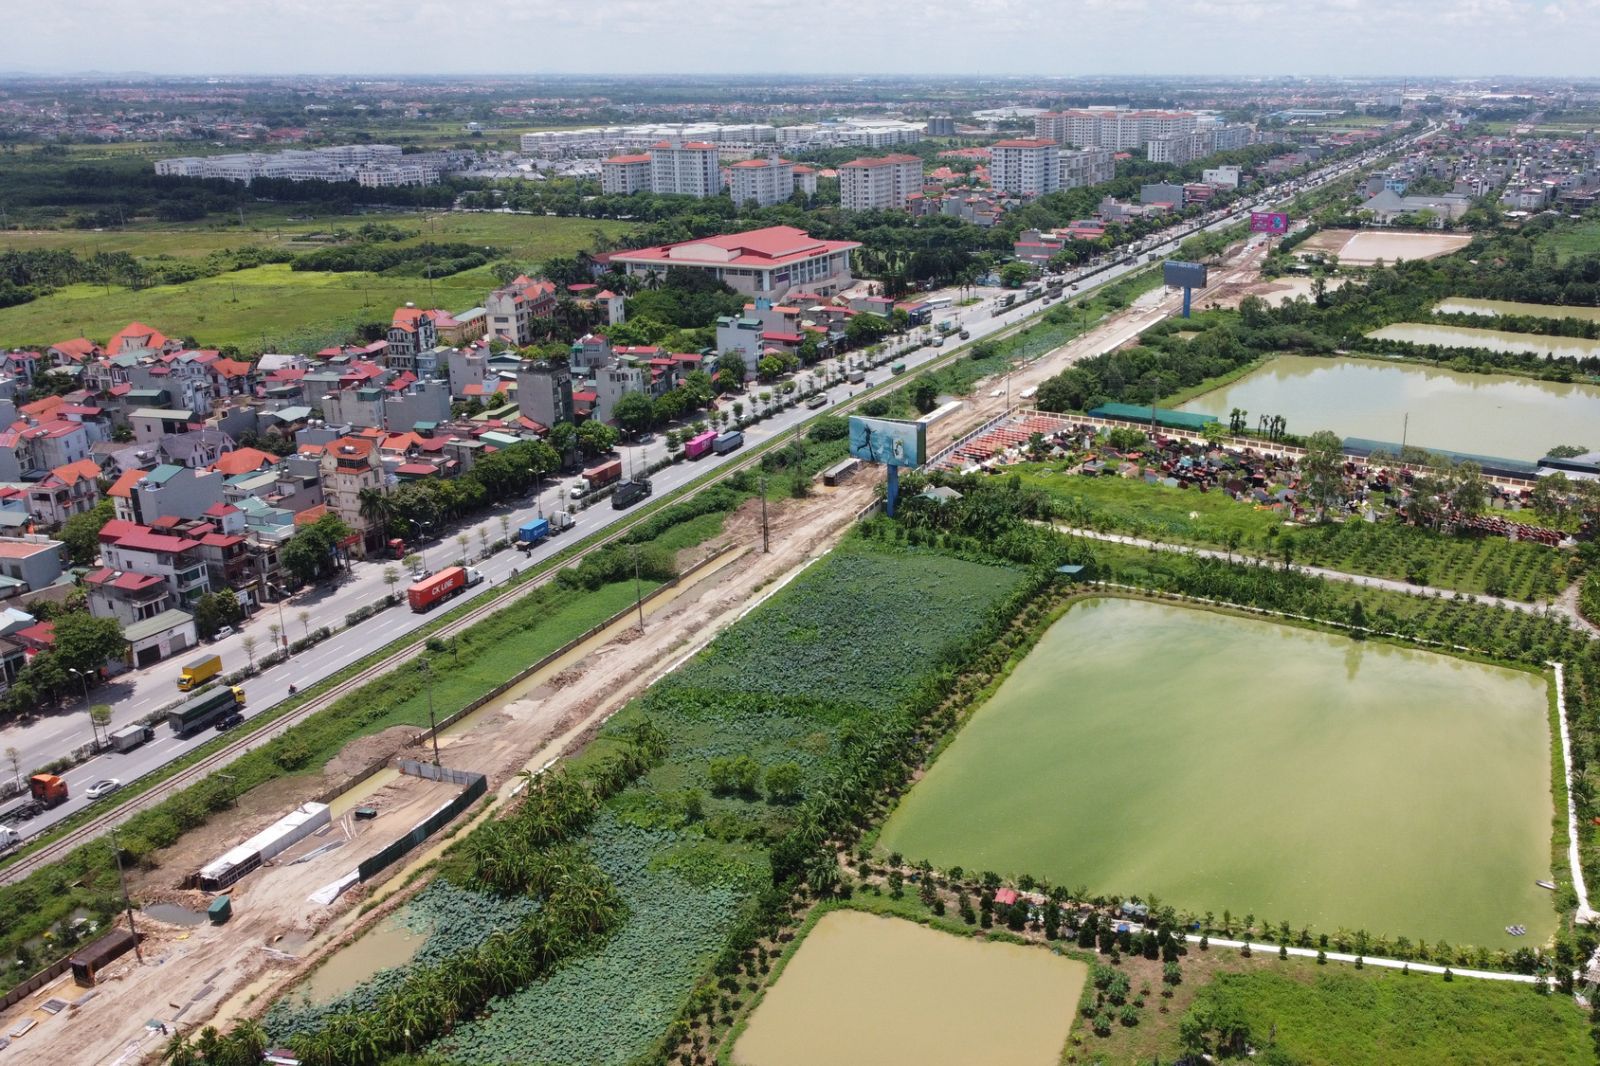 Uỷ ban Nhân dân huyện Gia Lâm cho rằng, việc thành lập quận và phường sẽ giúp hệ thống hạ tầng giao thông, y tế, giáo dục... được đầu tư đồng bộ.